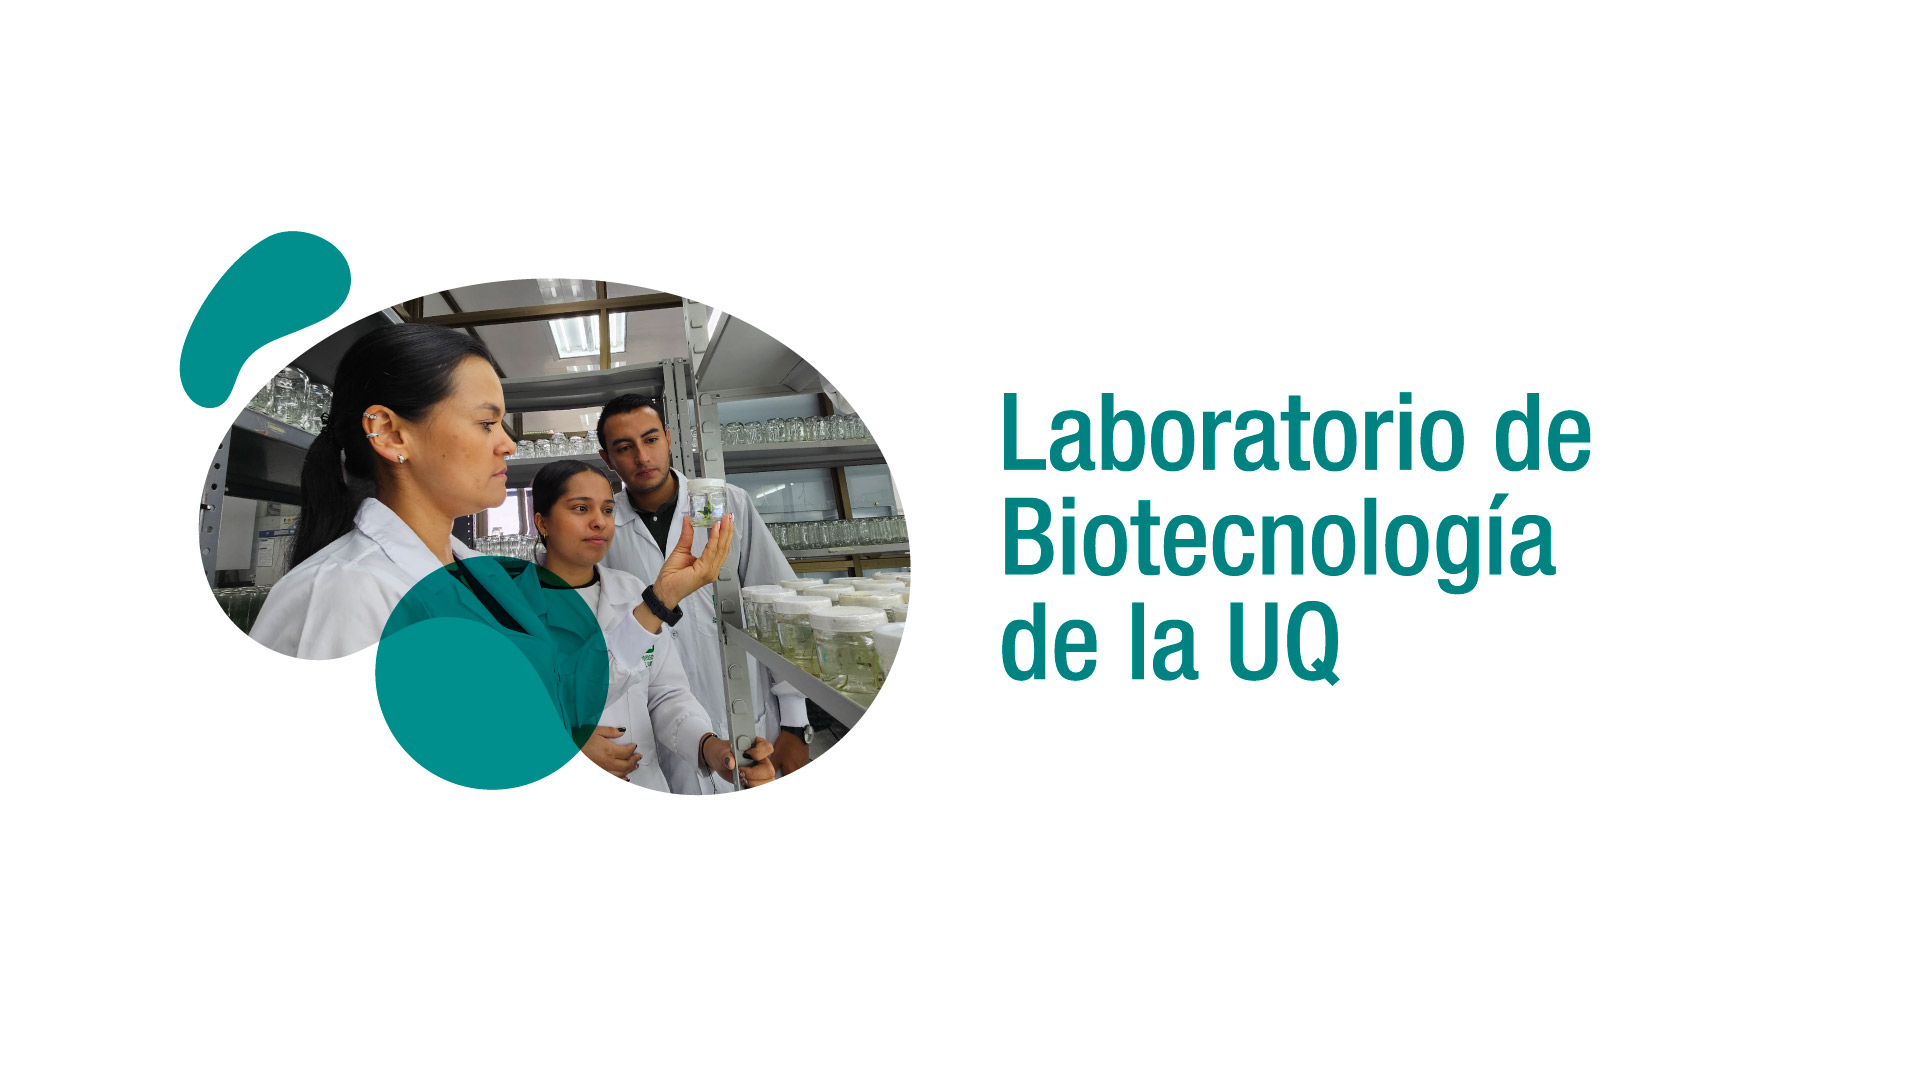 Más de 15 años de investigación en biotecnología